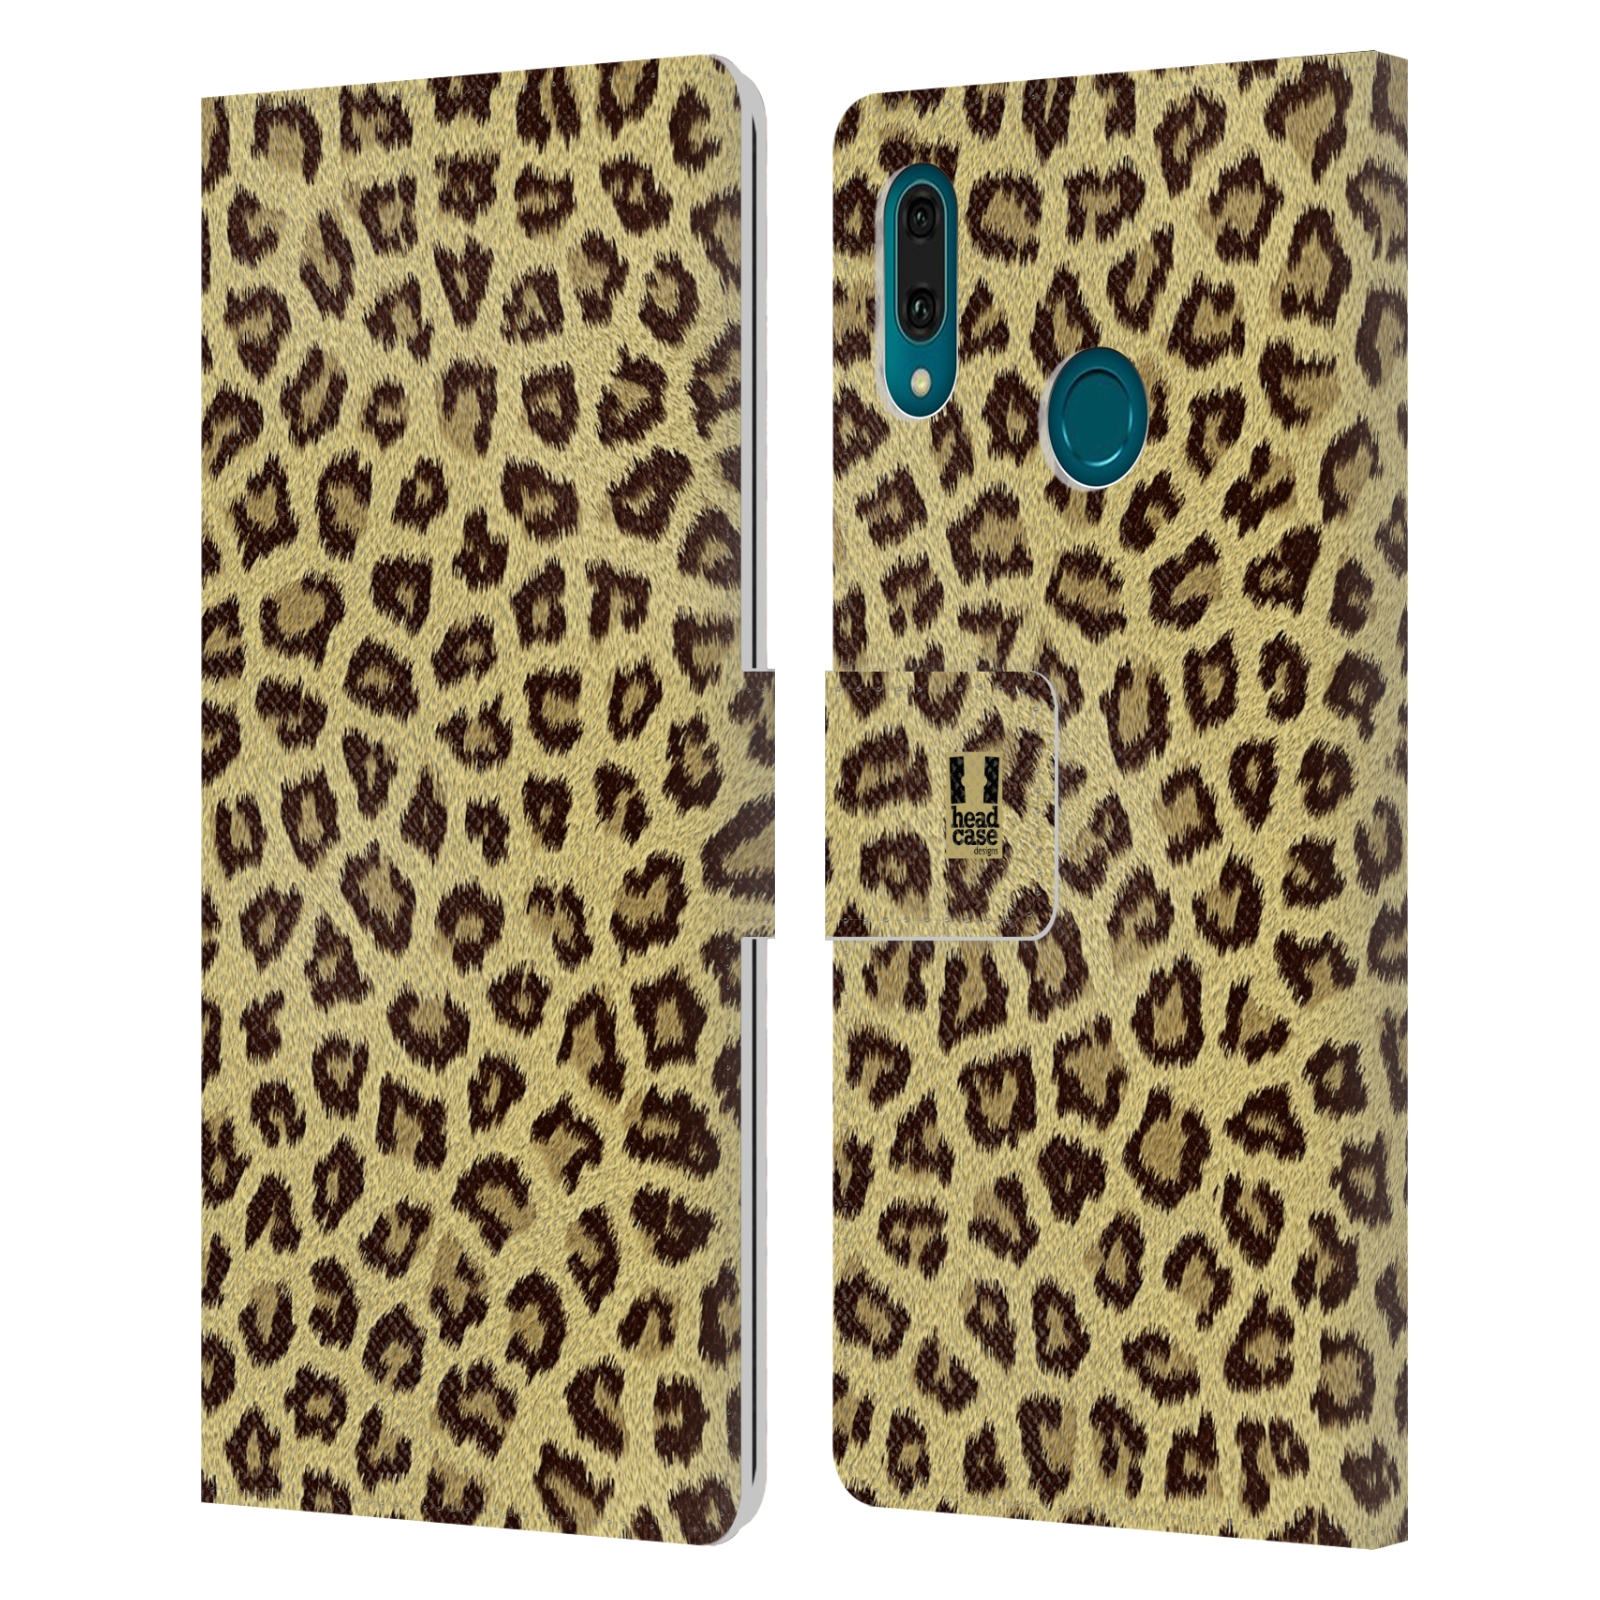 Pouzdro na mobil Huawei Y9 2019 zvíře srst divoká kolekce jaguár, gepard